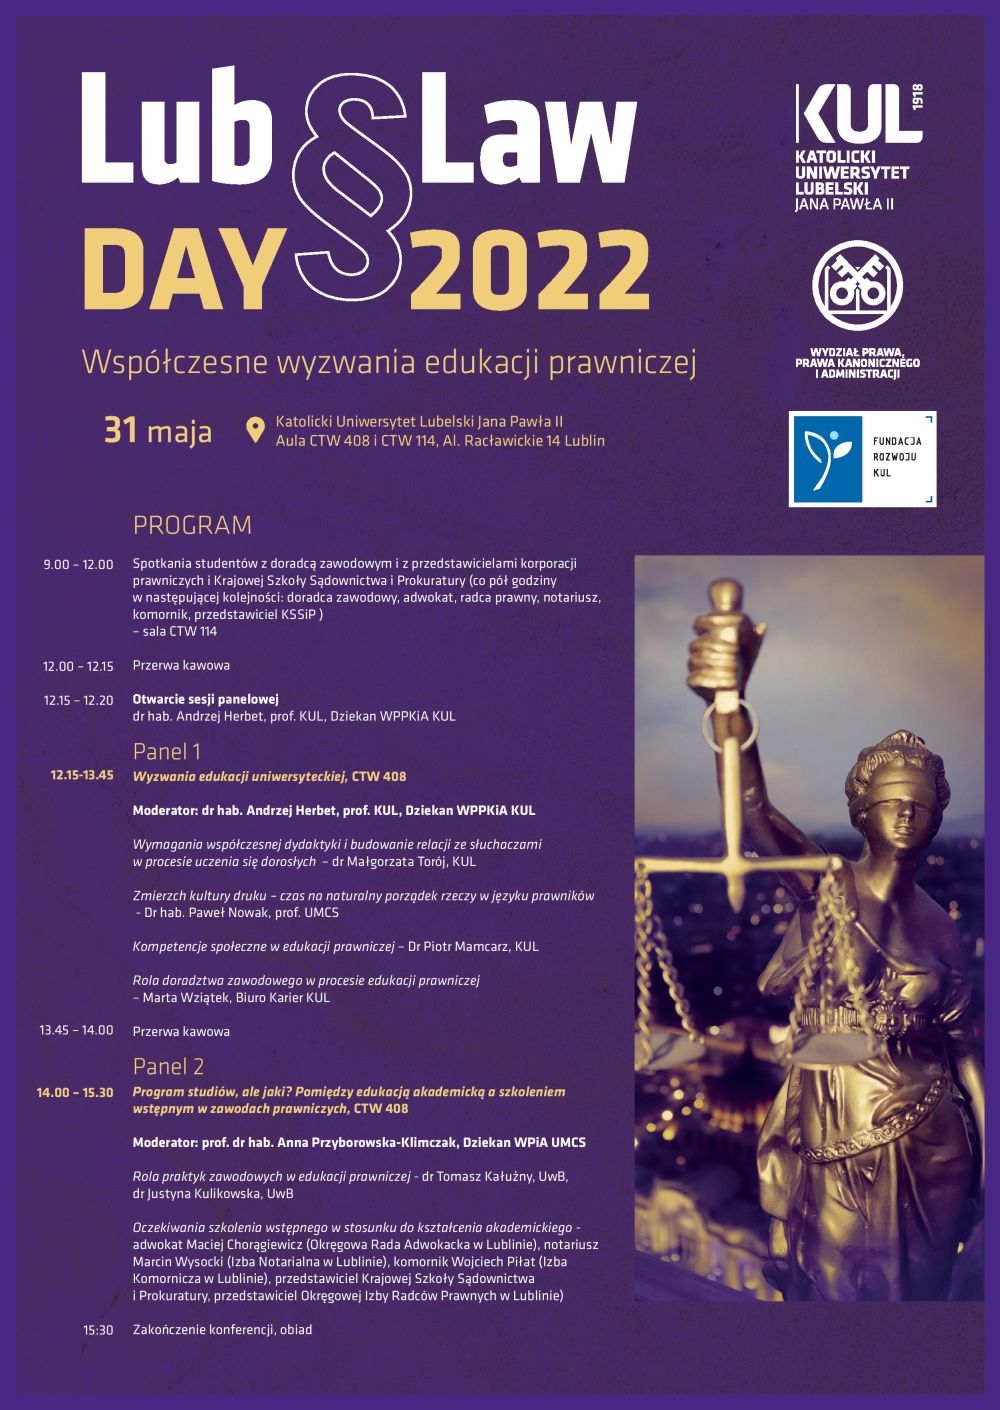 Lub§Law DAY 2022